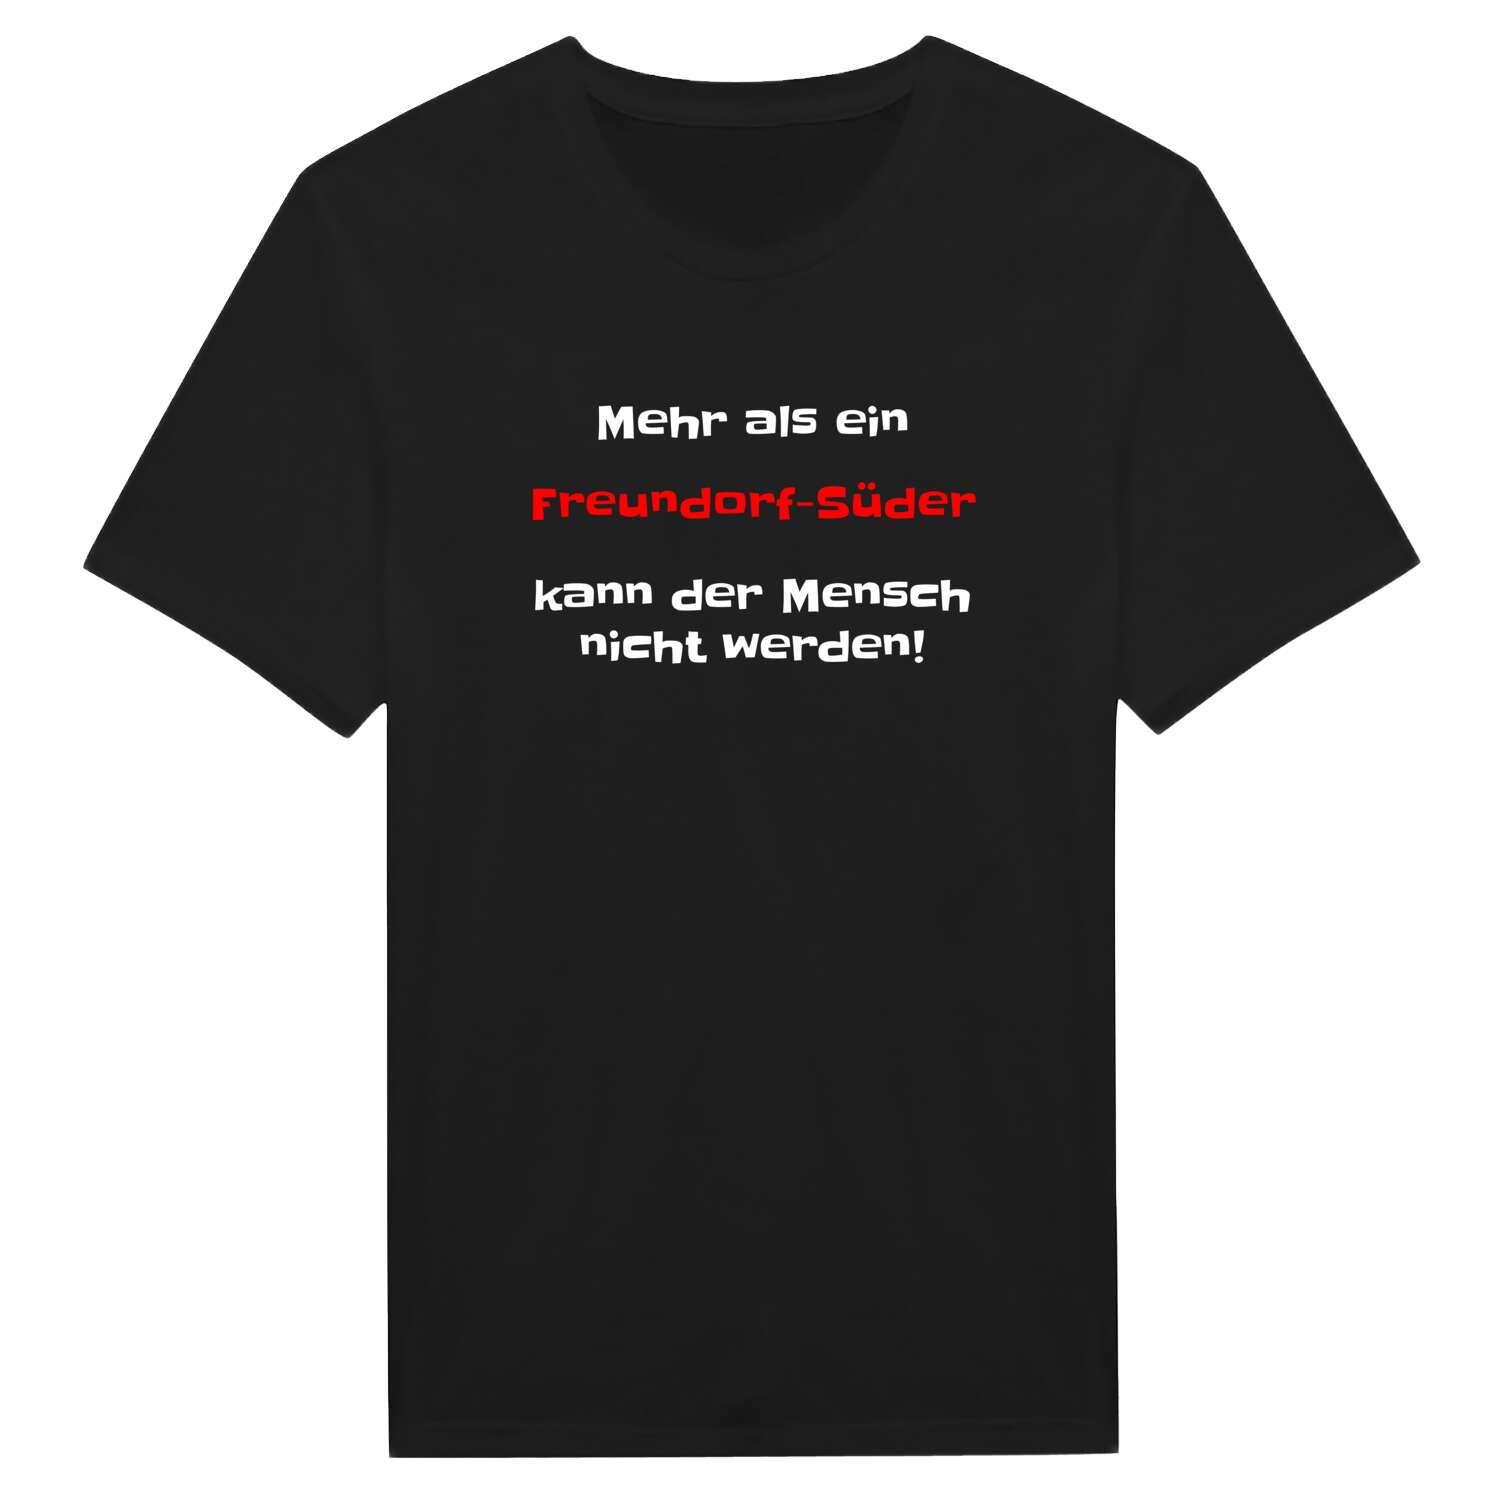 Freundorf-Süd T-Shirt »Mehr als ein«